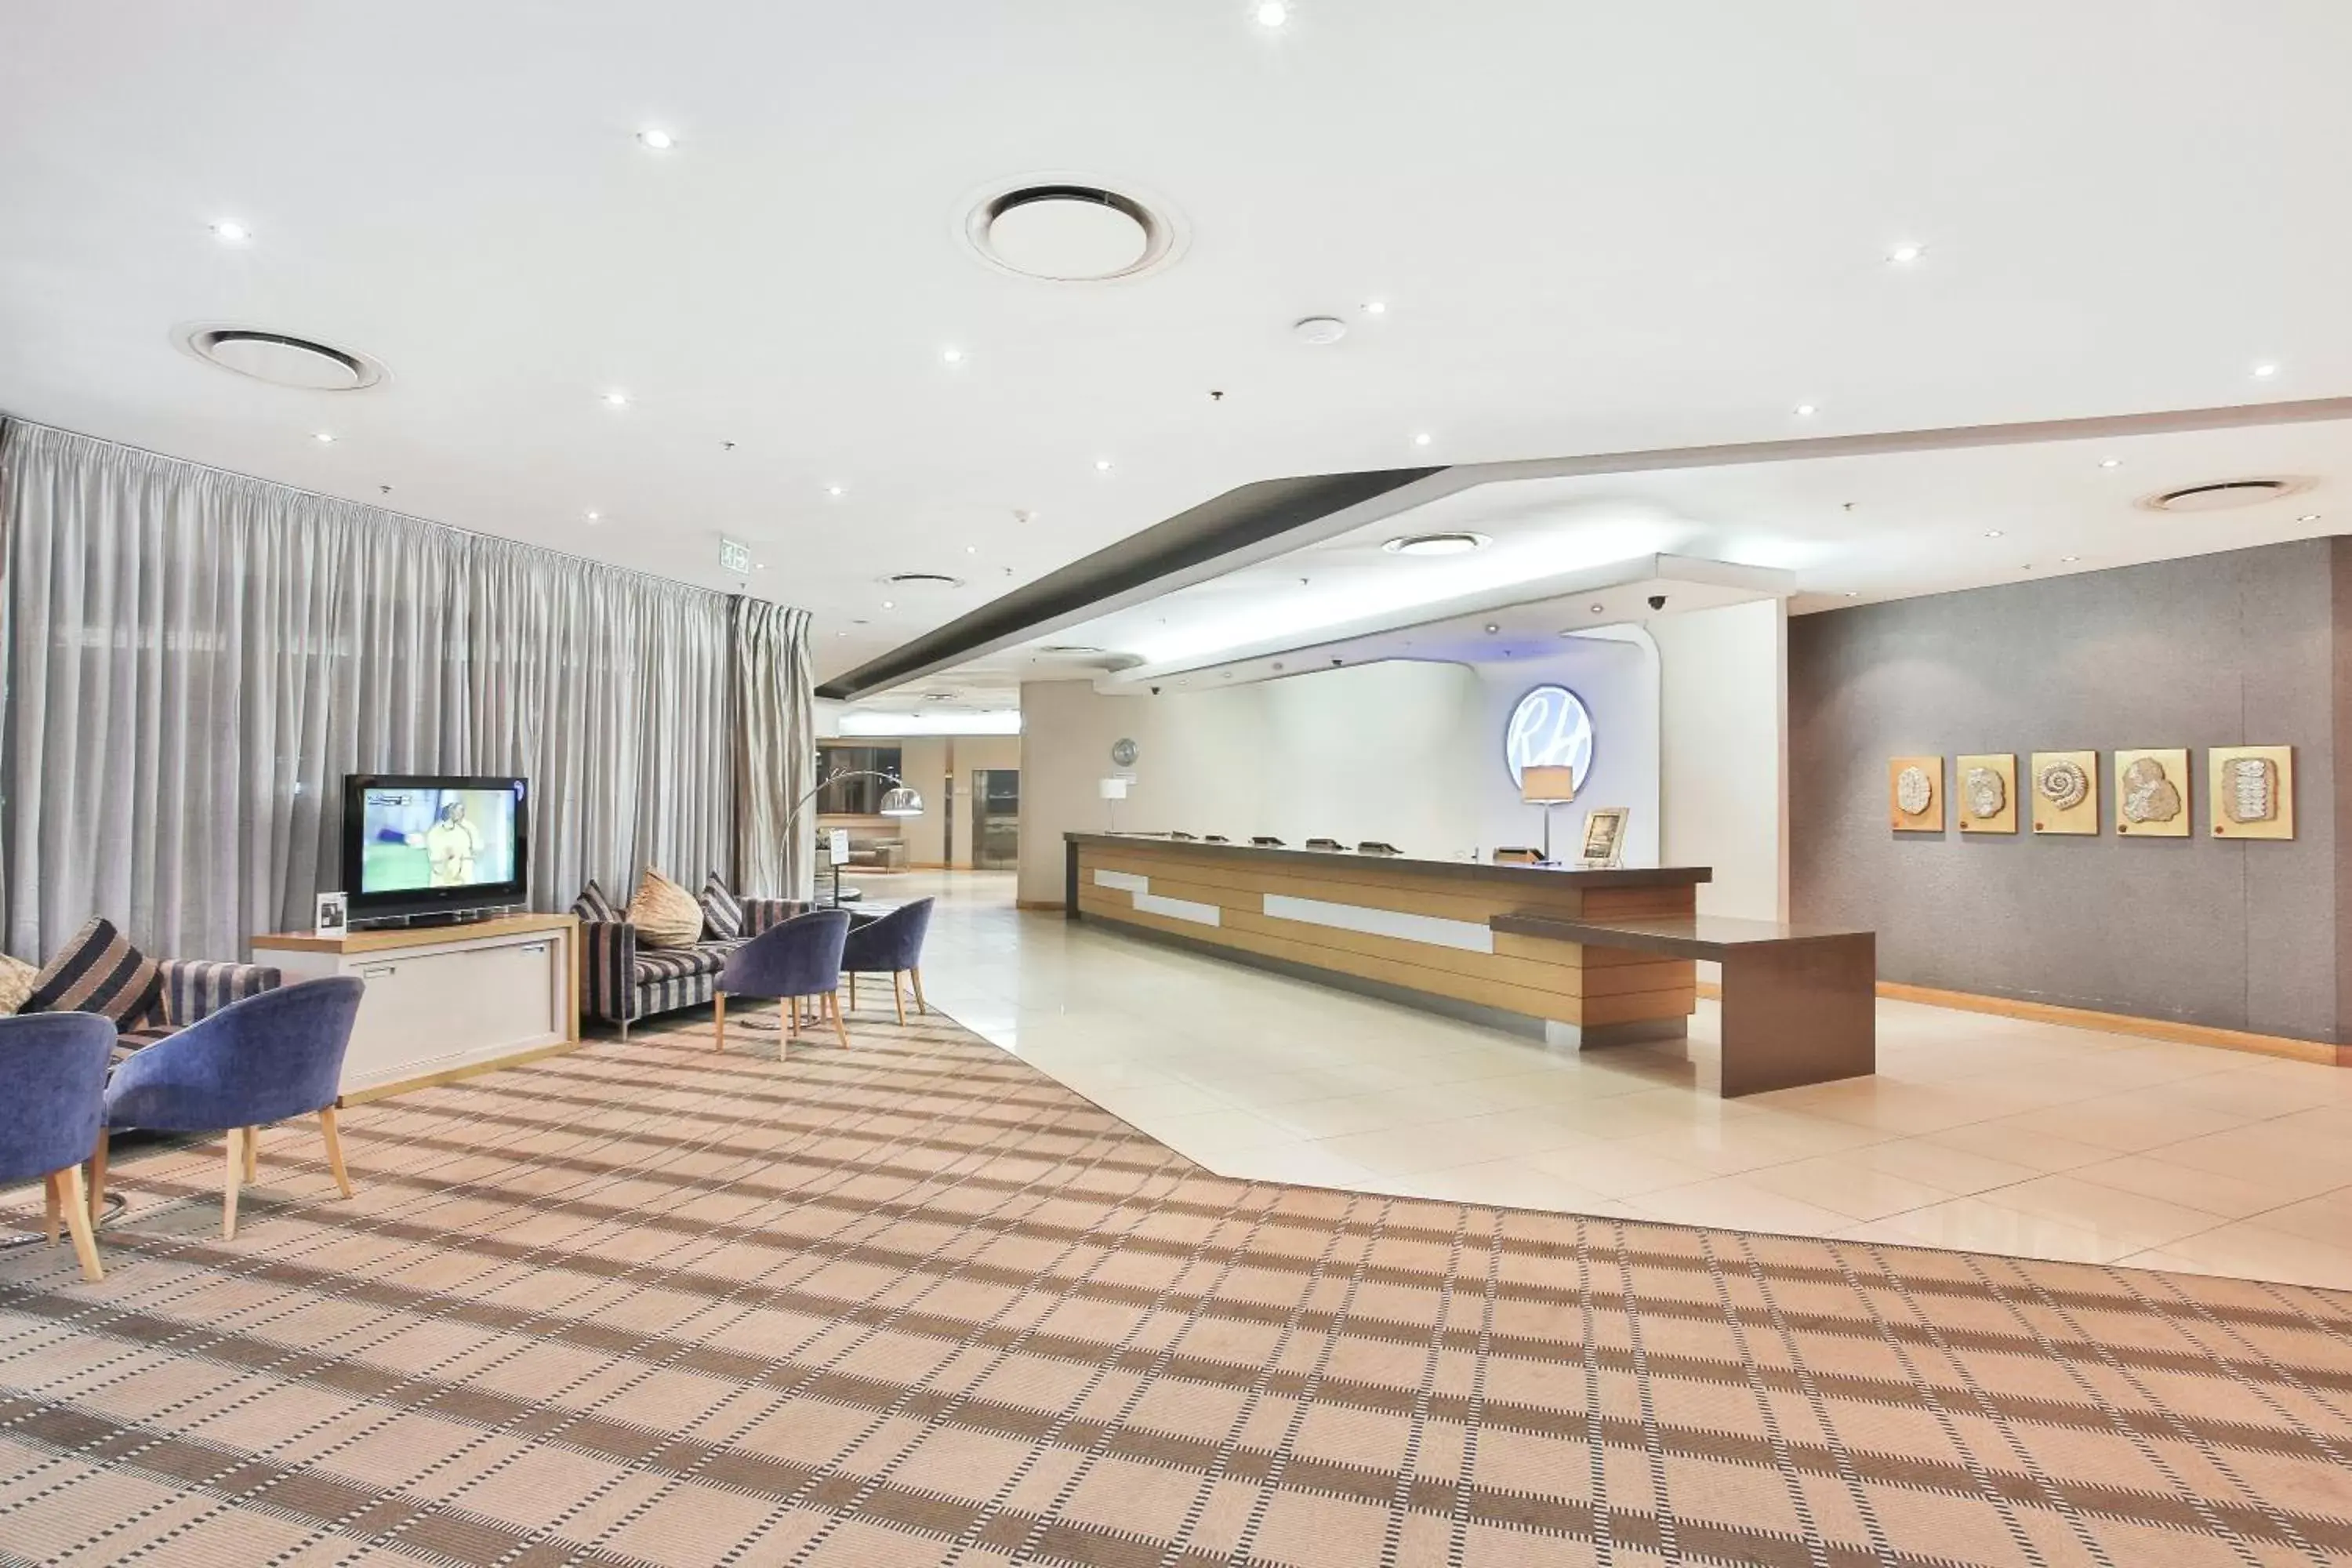 Lobby or reception, Lobby/Reception in RH Hotel Pretoria